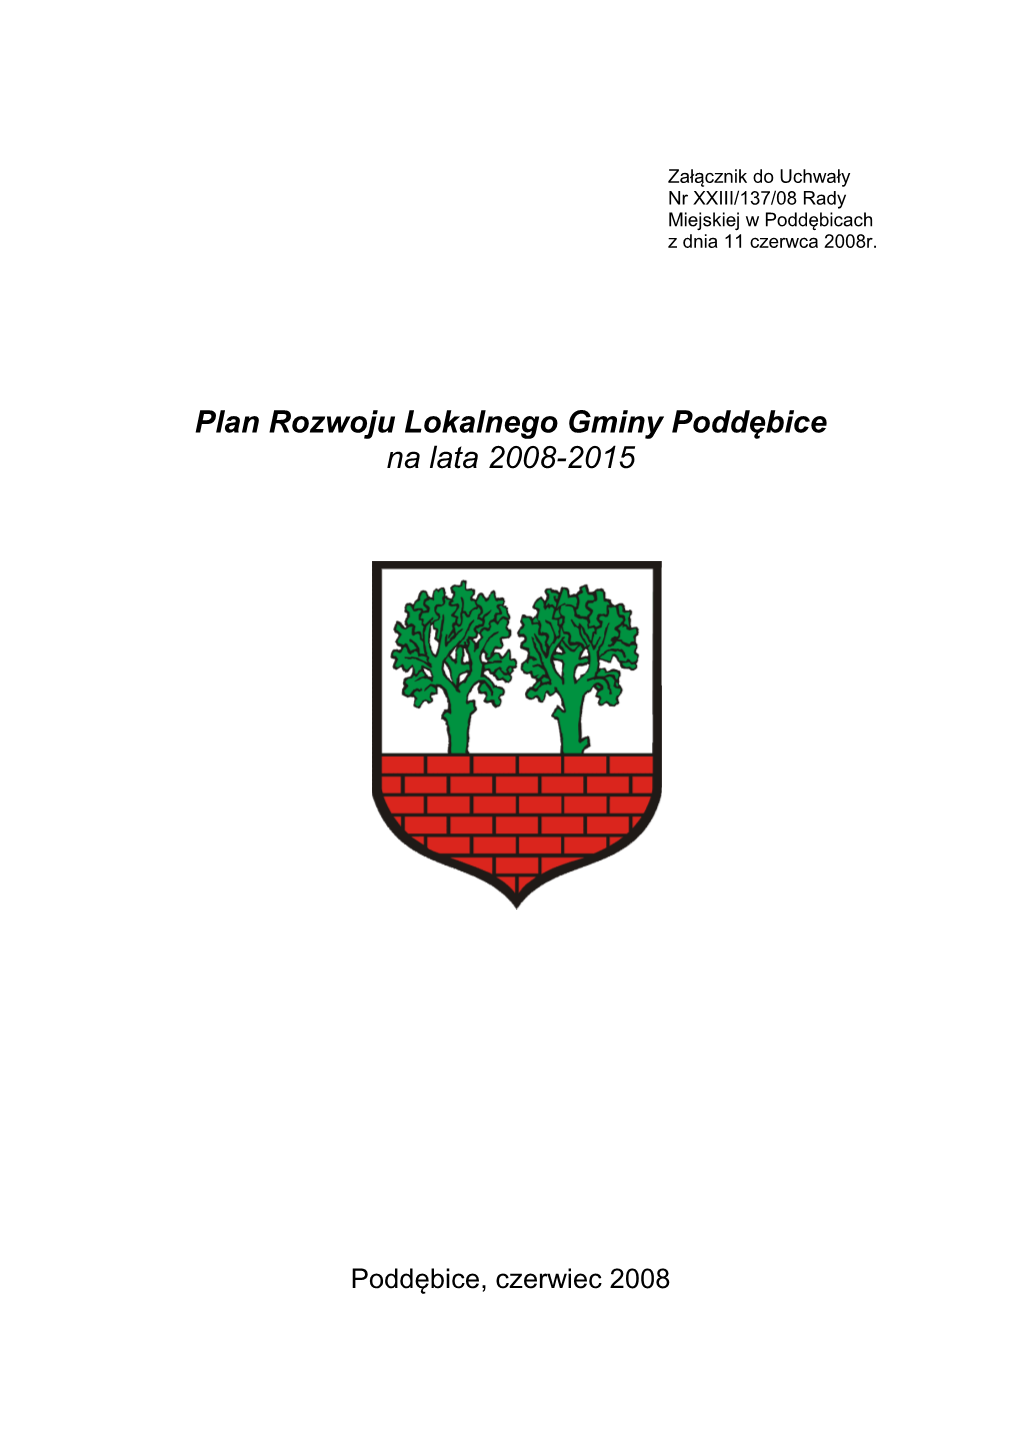 Plan Rozwoju Lokalnego Gminy Poddębice Na Lata 2008-2015